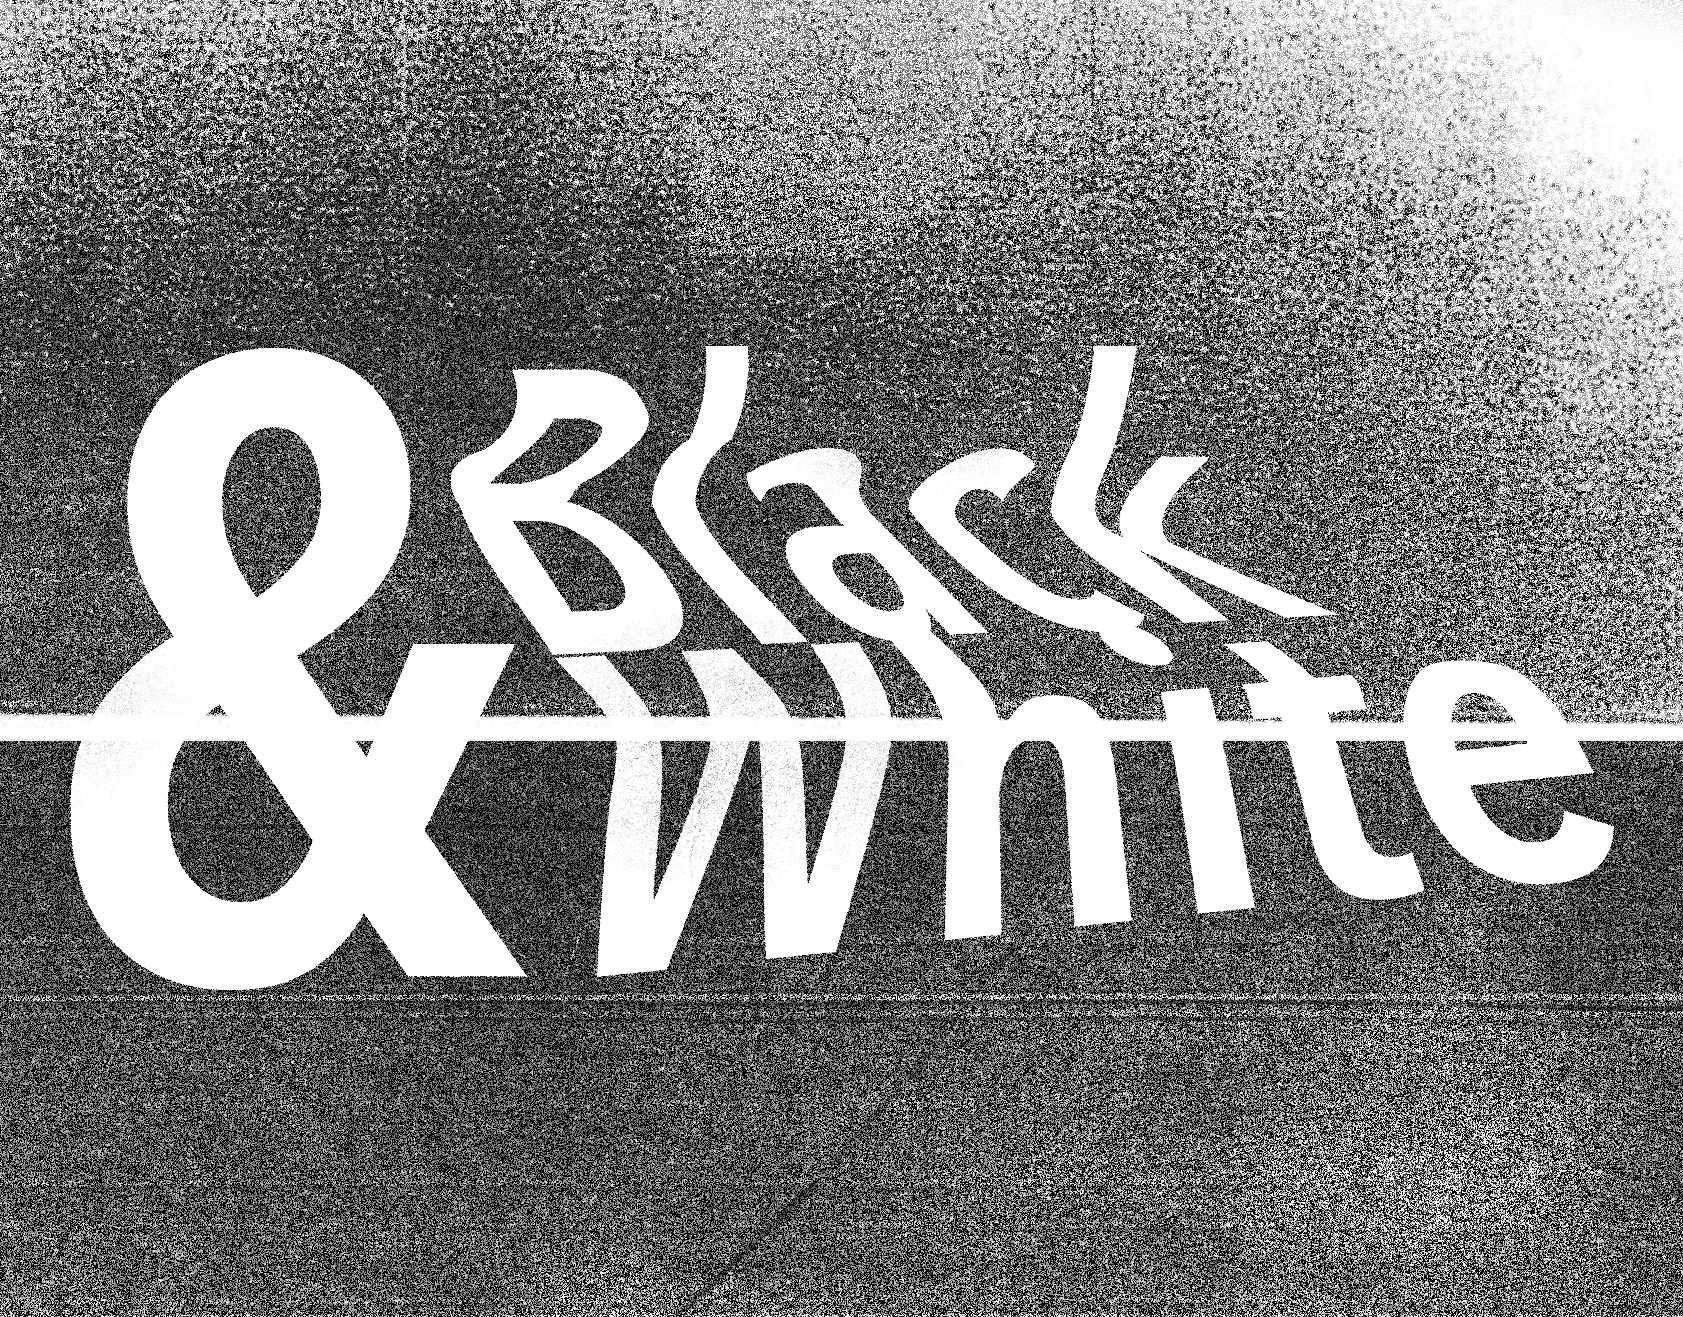 NYX Awards 2018 quest Winner  - Black & White